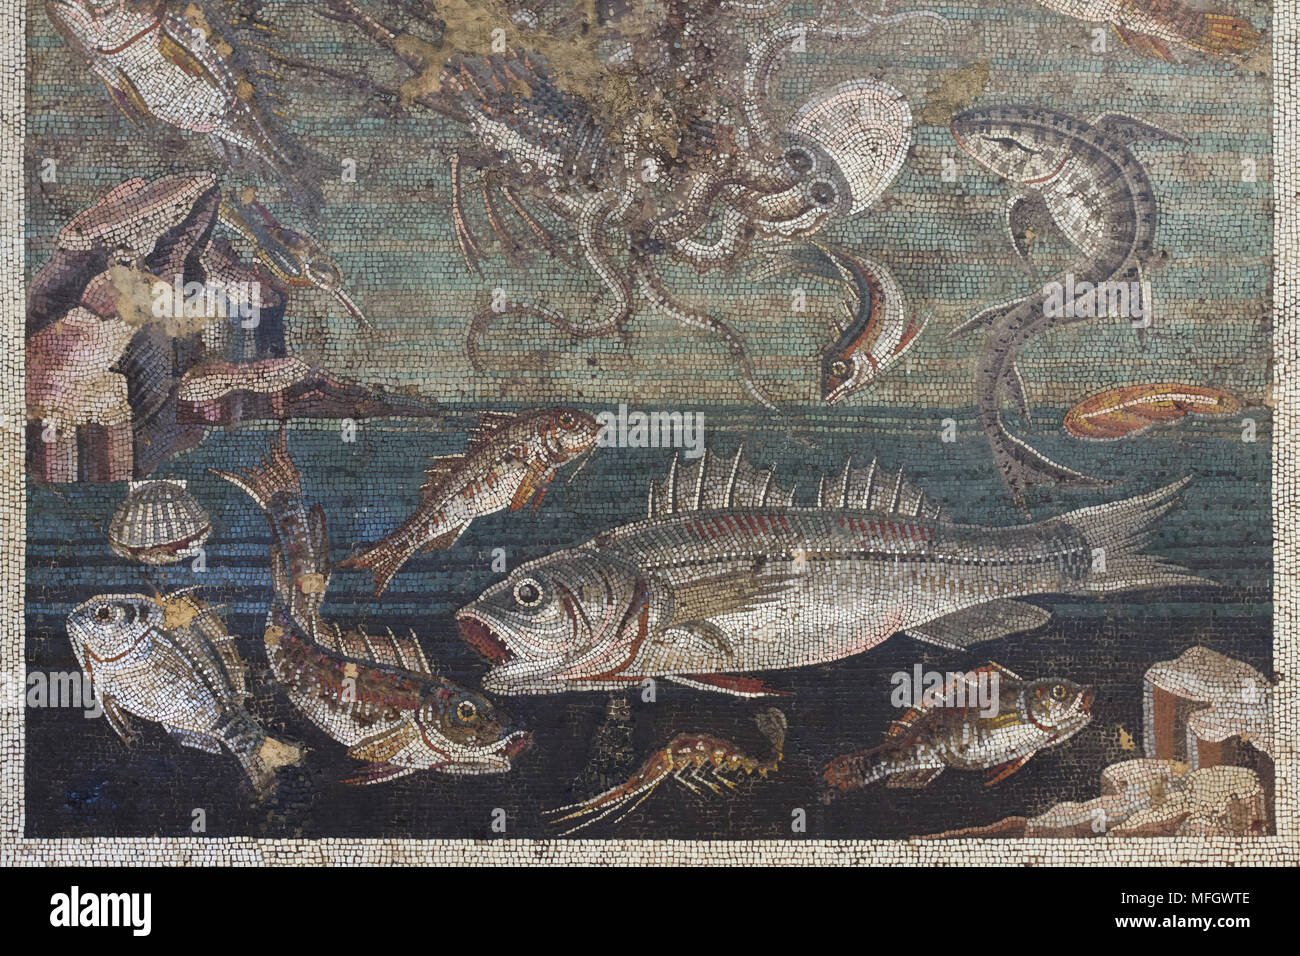 Fisch in der römischen Mosaik aus dem TRICLINIUM der Casa del Fauno (Haus des Faun) in Pompeji dargestellt, nun im Nationalen Archäologischen Museum (Museo Archeologico Nazionale di Napoli) in Neapel, Kampanien, Italien. Stockfoto